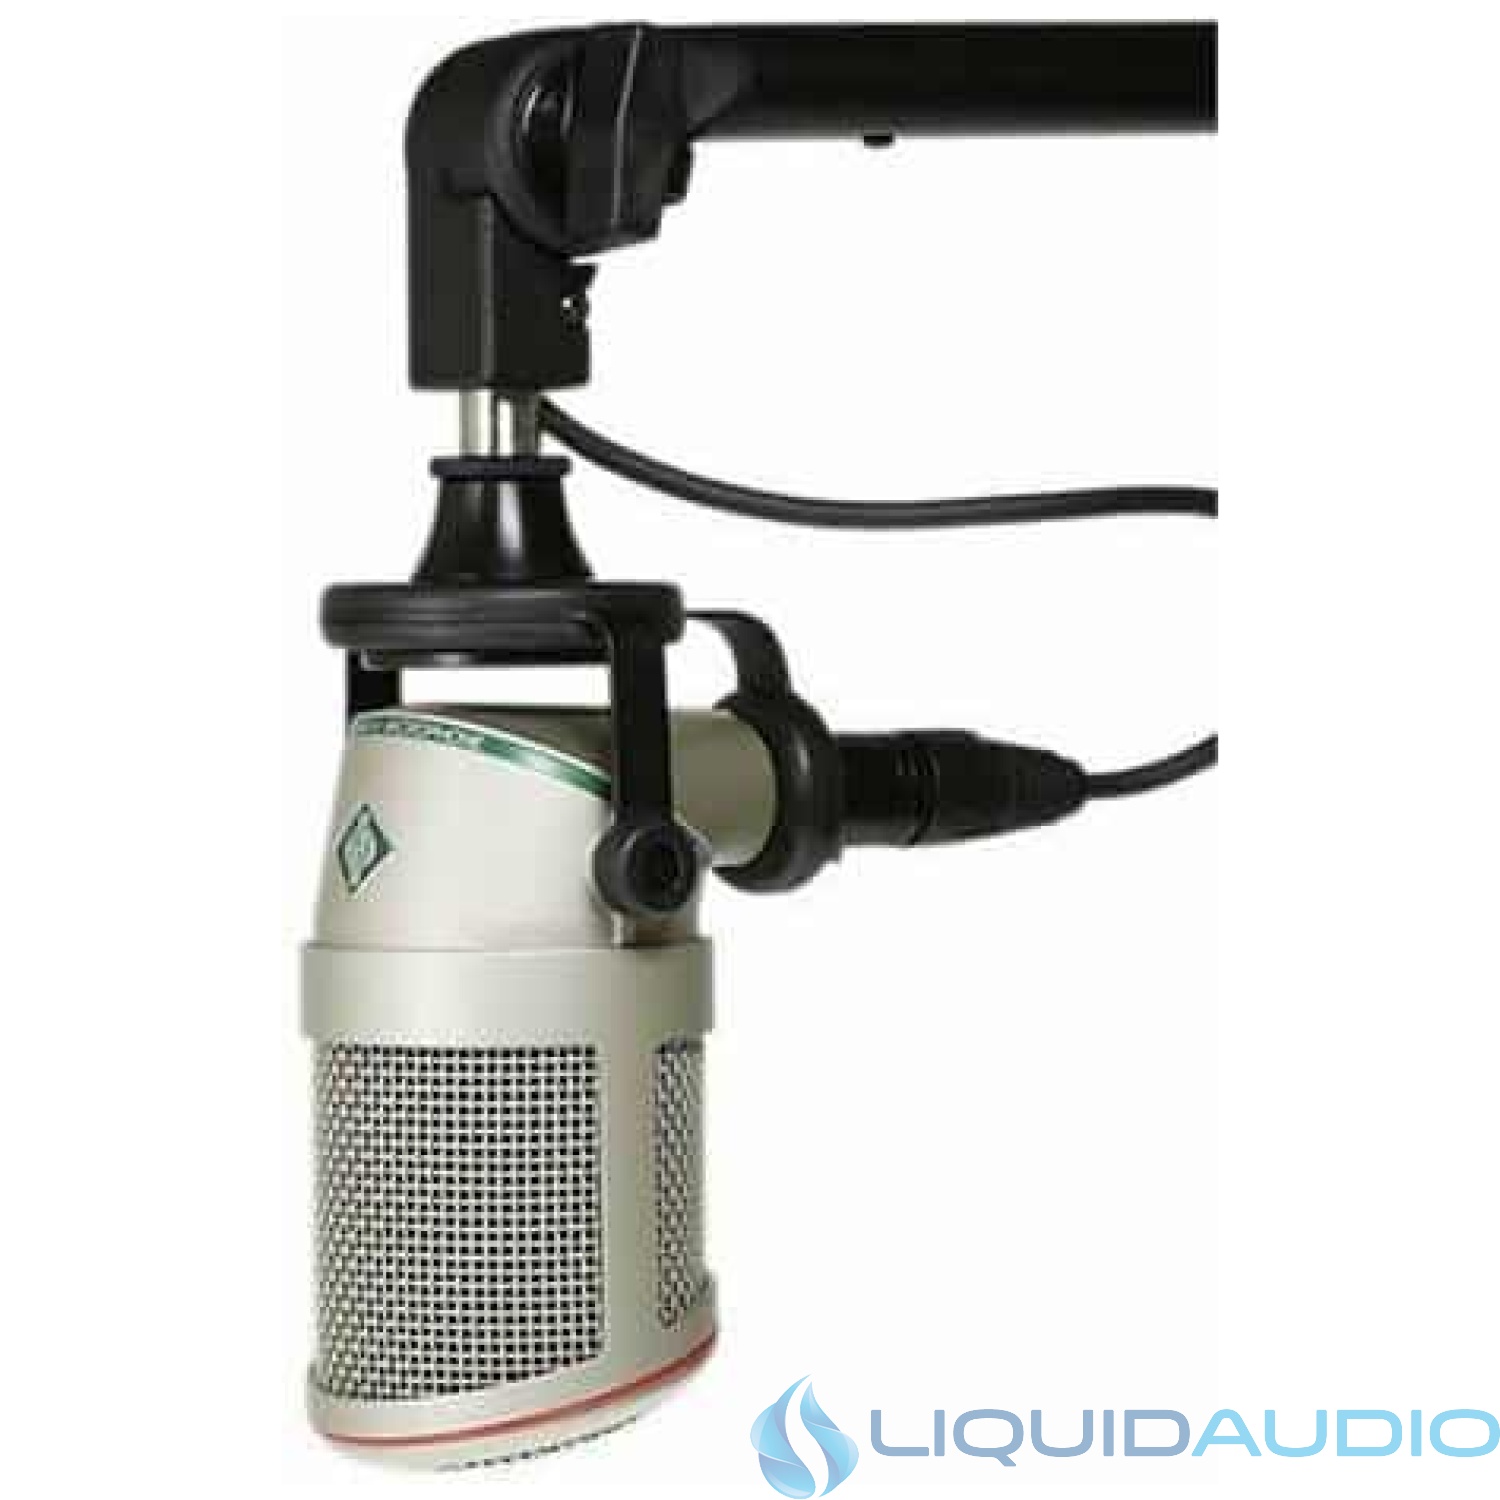 NEUMANN BCM 705 Dynamic Broadcast Hypercardioid Microphone